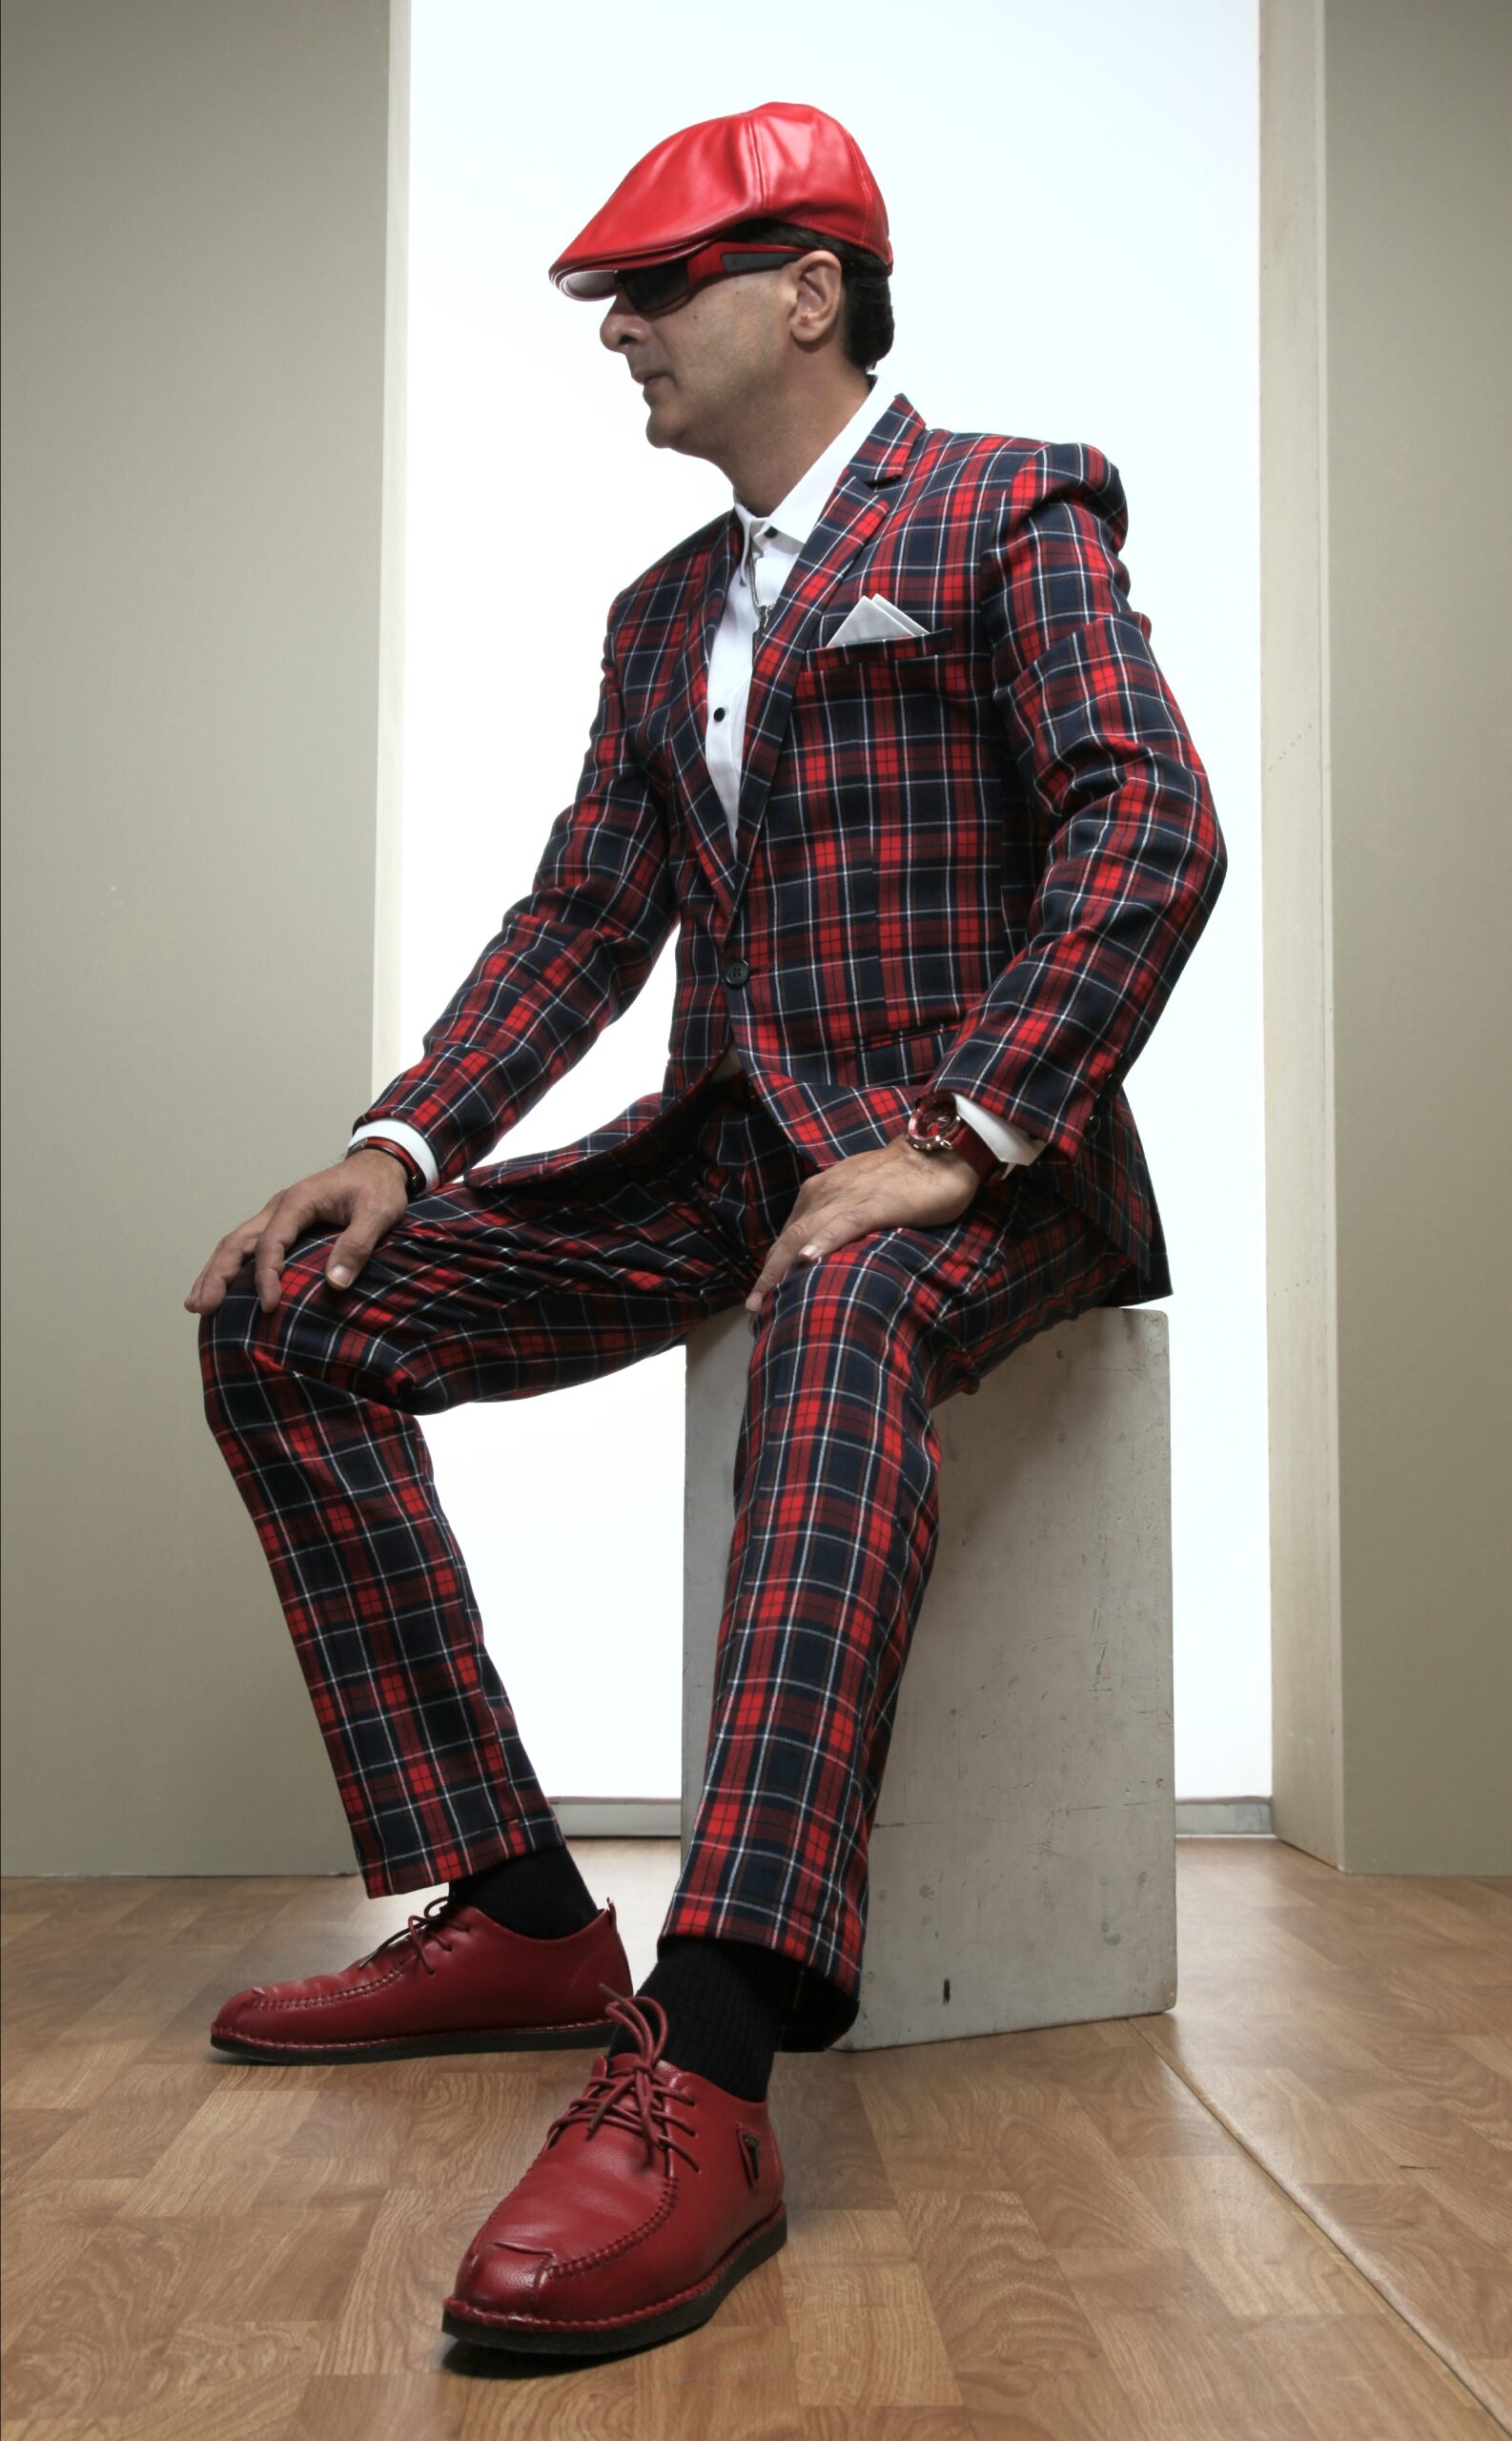 MST-5012-02-rent_rental_hire_tuxedo_suit_black_tie_suit_designer_suits_shop_tailor_tailors_singapore_wedding